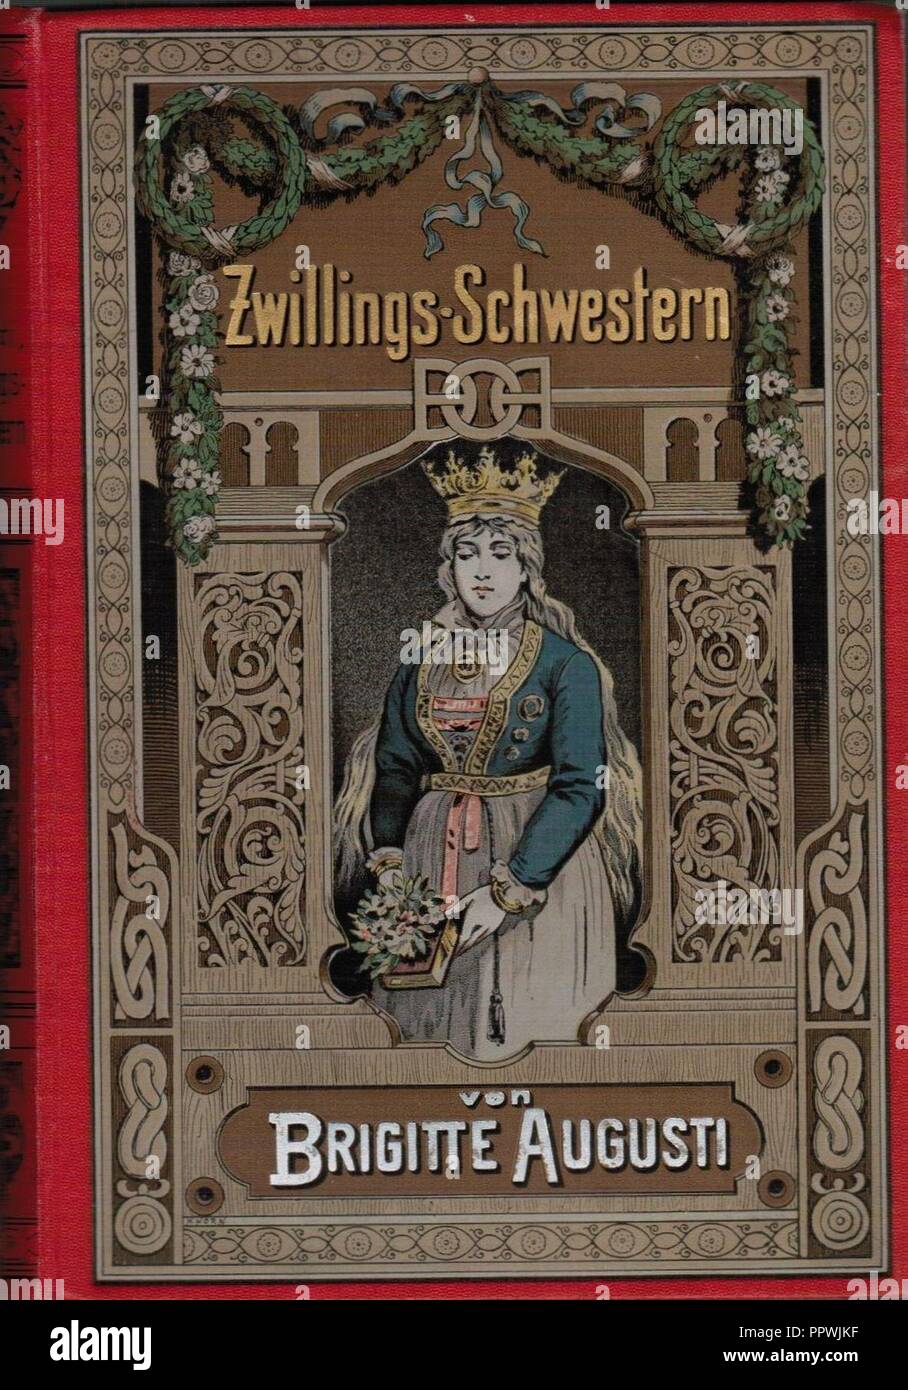 Brigitte Augusti - Zwillings-Schwestern-1891 - Woldemar Friedrich. Stockfoto